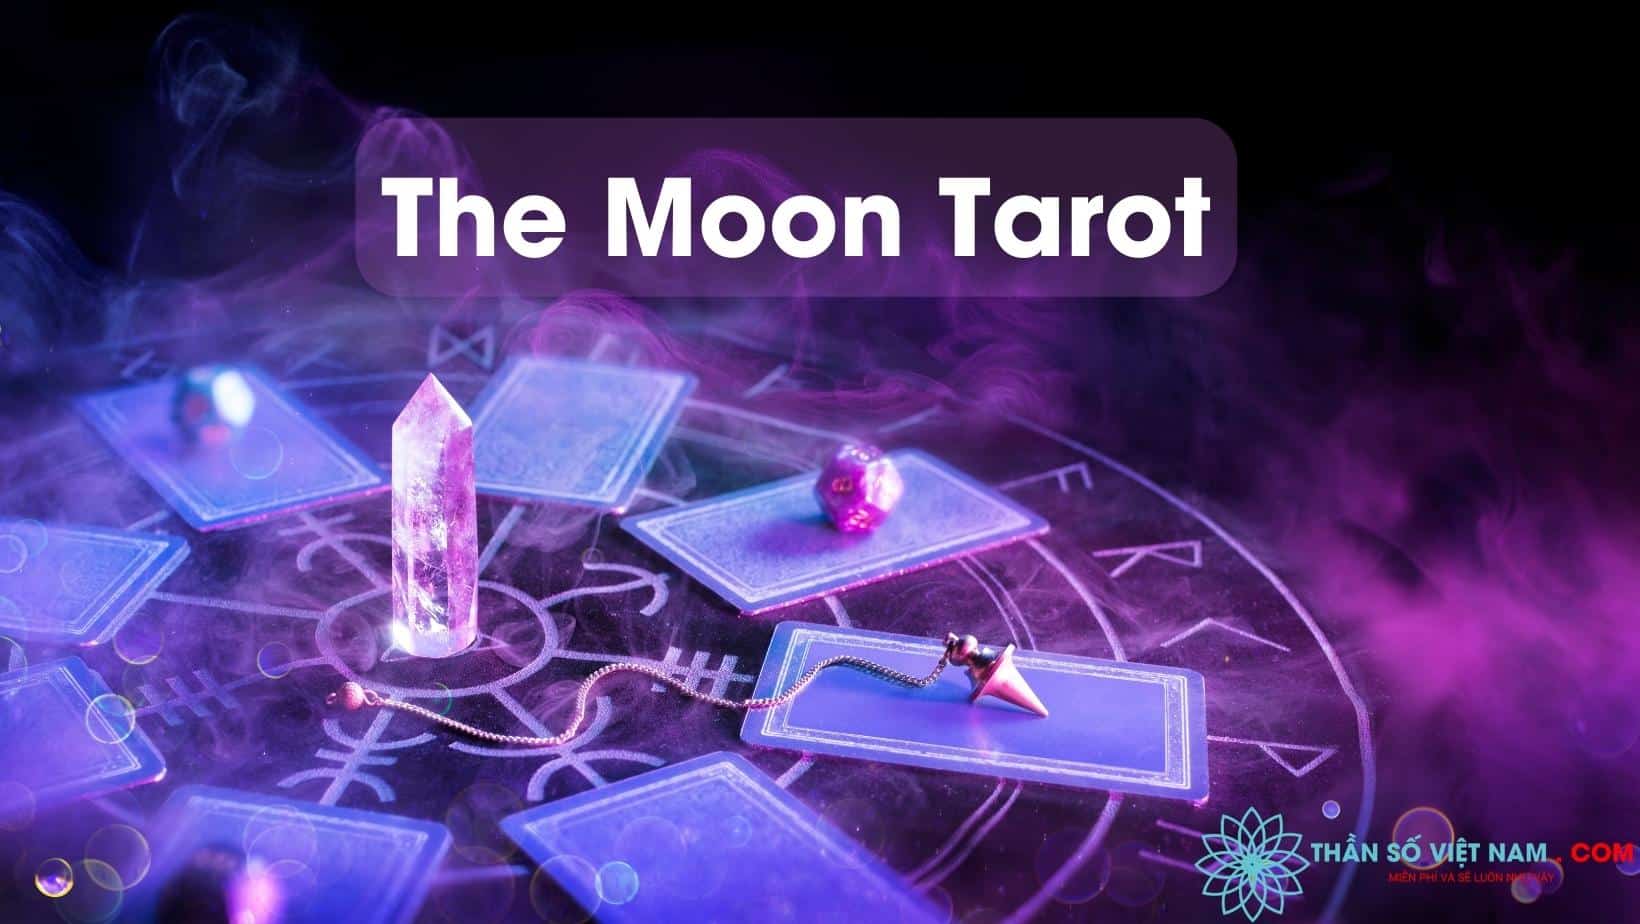 Lá bài The Moon Tarot: Cuộc sống của bạn đang gặp khó khăn và căng thẳng? Hãy cùng xem hình ảnh liên quan đến lá bài The Moon Tarot để tìm ra lời giải cho vấn đề của mình. Lá bài này sẽ giúp bạn bình tĩnh và tự tin đối phó với mọi tình huống.